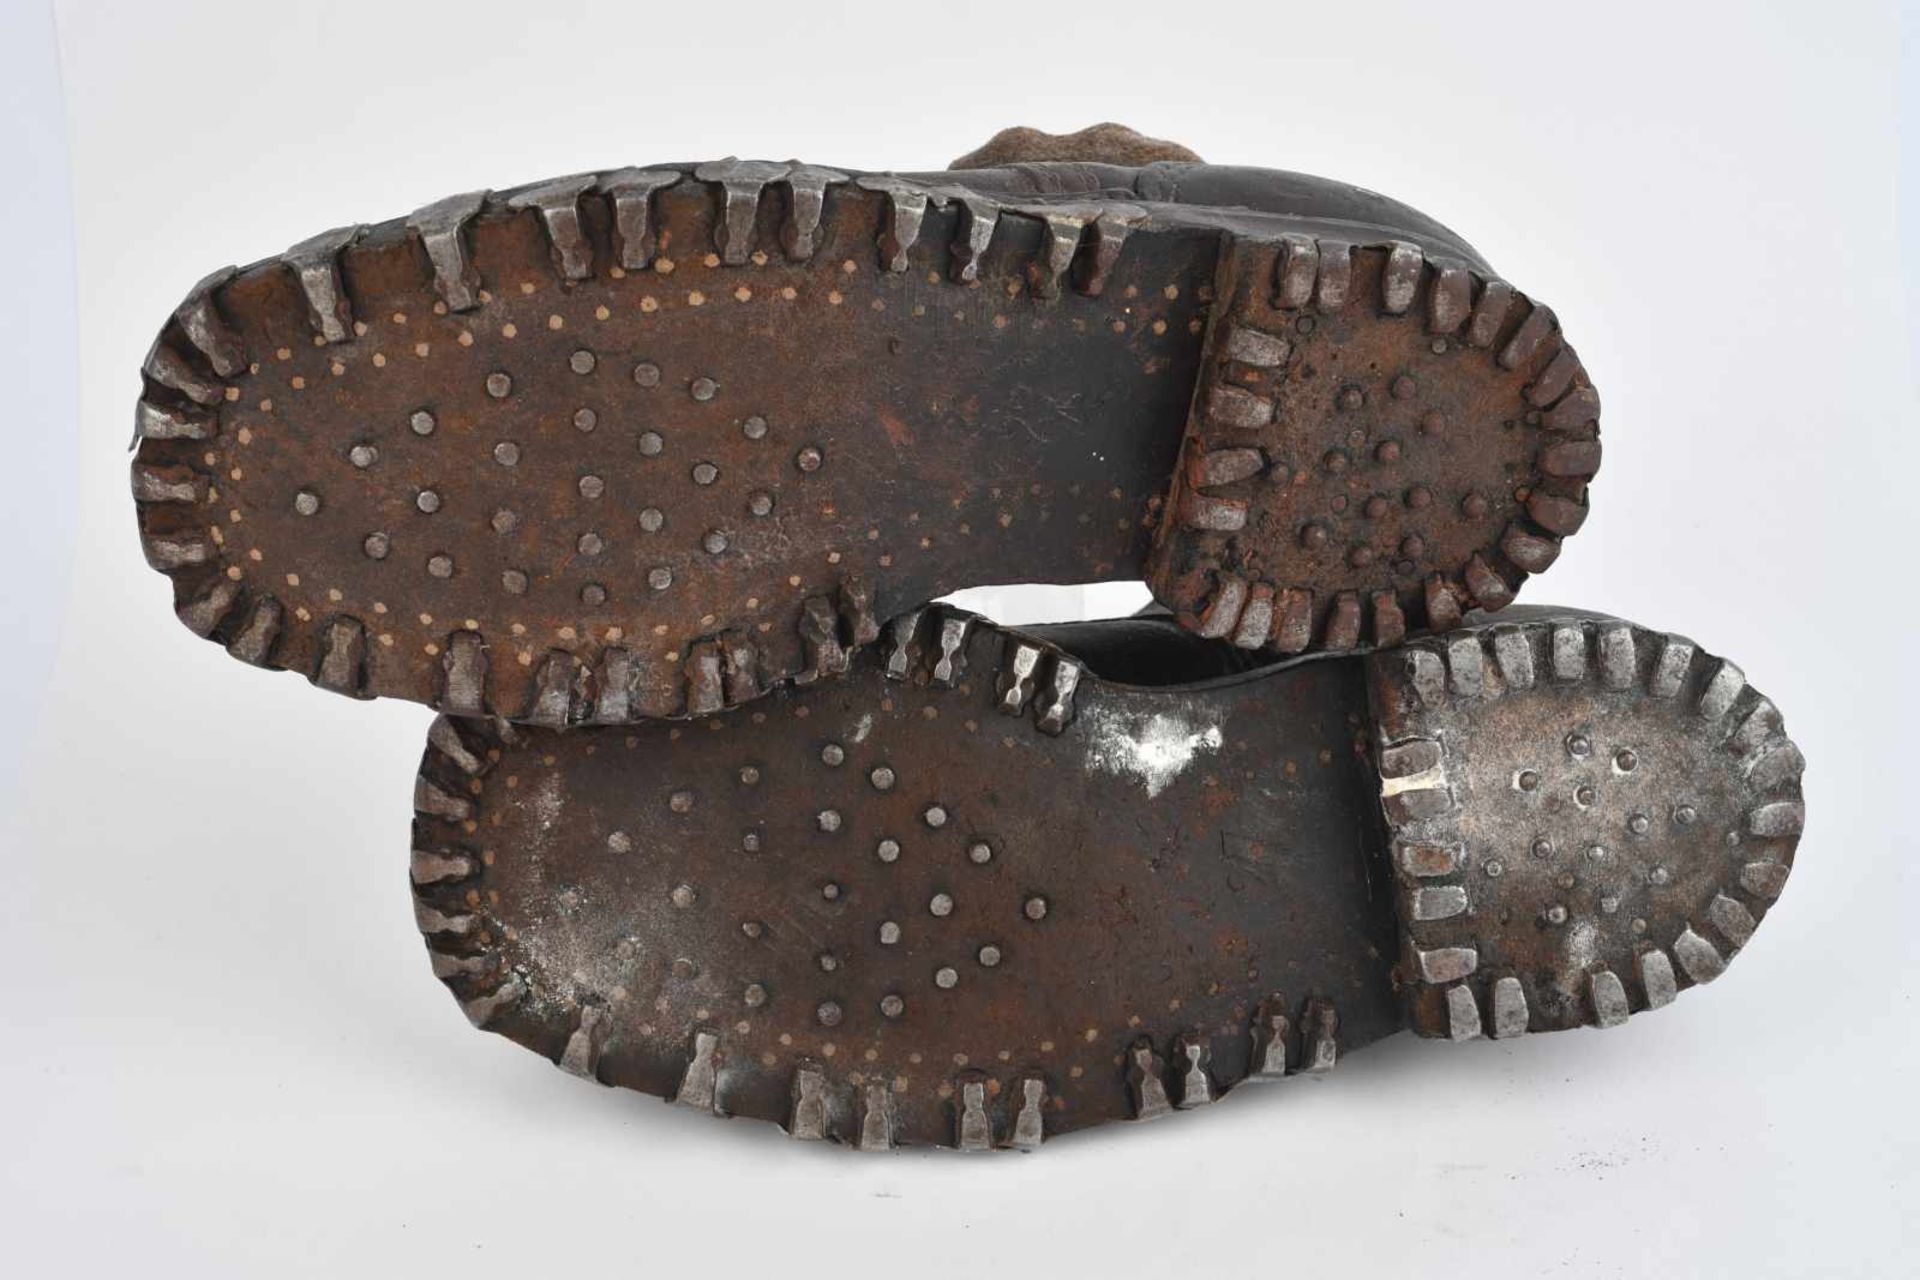 Brodequin de Gebirgsjäger en cuir marron, bande en tissu sur le haut de la chaussure. Double rangées - Bild 2 aus 3